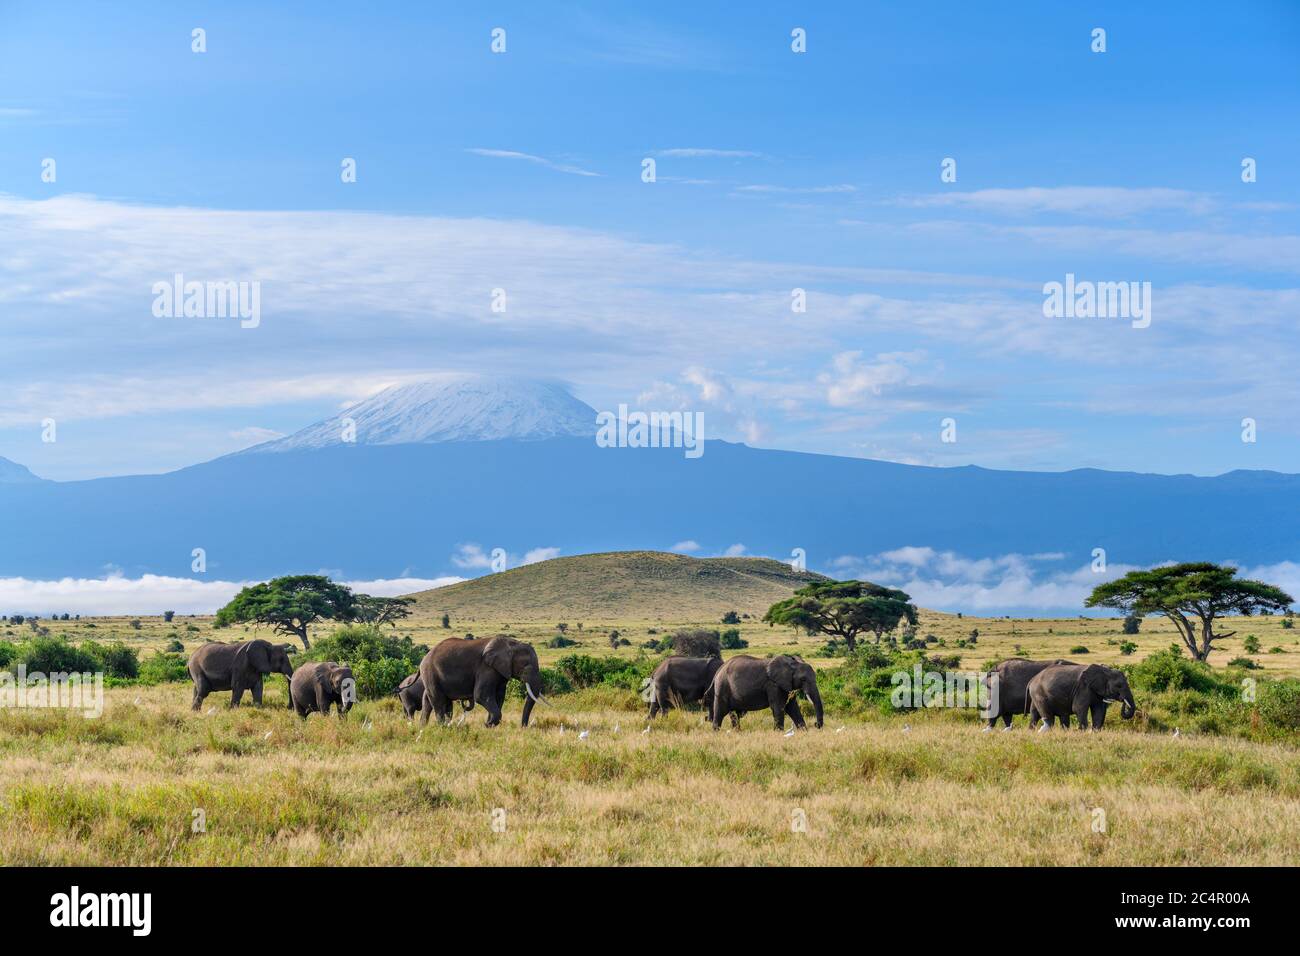 Éléphants de brousse africains (Loxodonta africana) avec le mont Kilimanjaro derrière, parc national d'Amboseli, Kenya, Afrique Banque D'Images